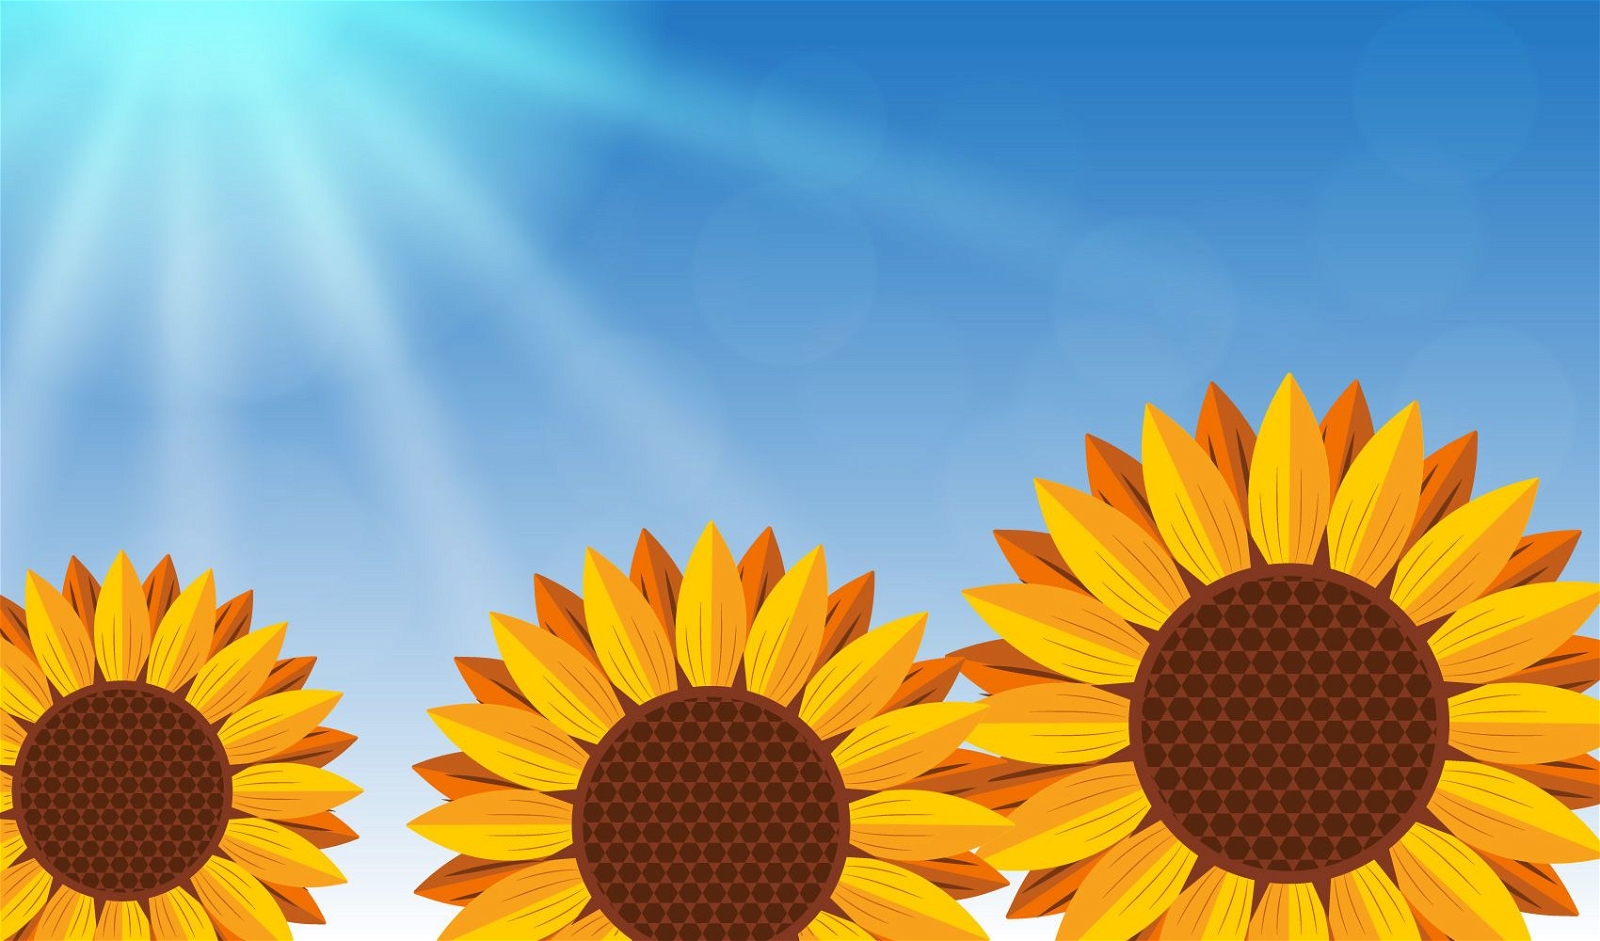 Realistische Sonnenblumen auf blauem Hintergrund